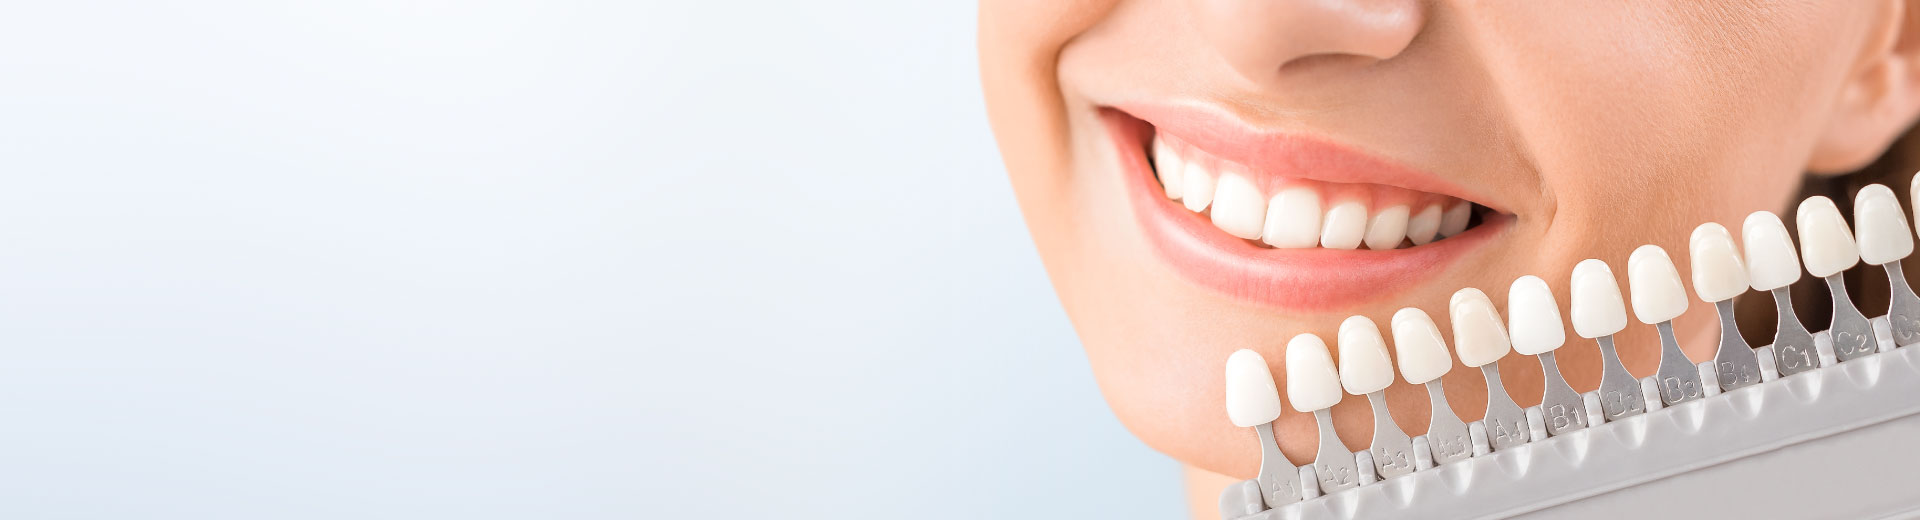 [Top Banner Desktop] Tẩy răng bị nhiễm kháng sinh và cách khắc phục hiệu quả, an toàn